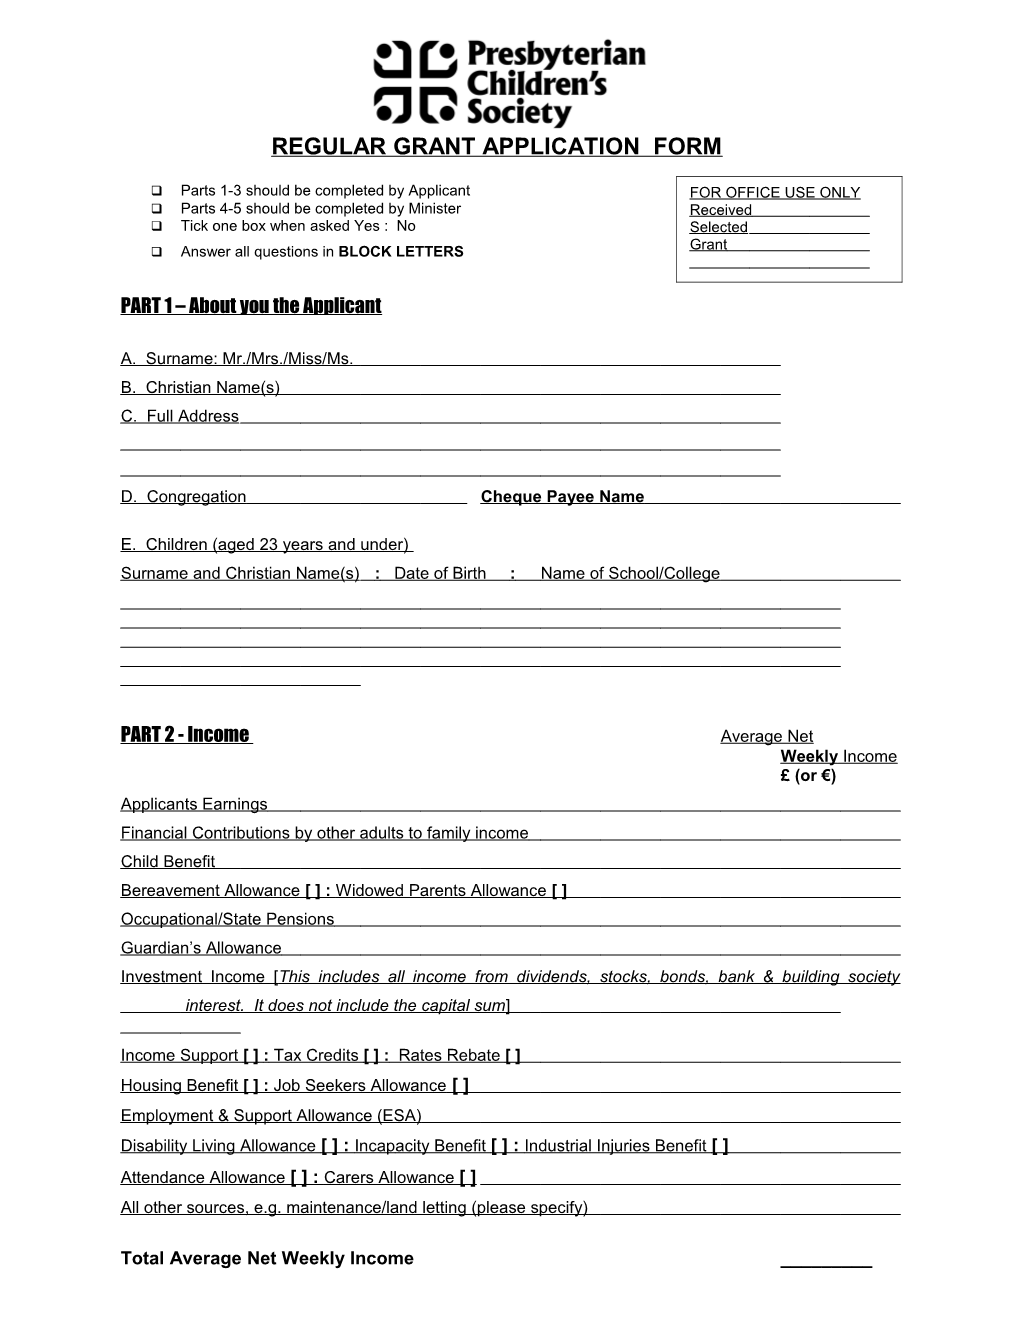 Regular Grant Application Form